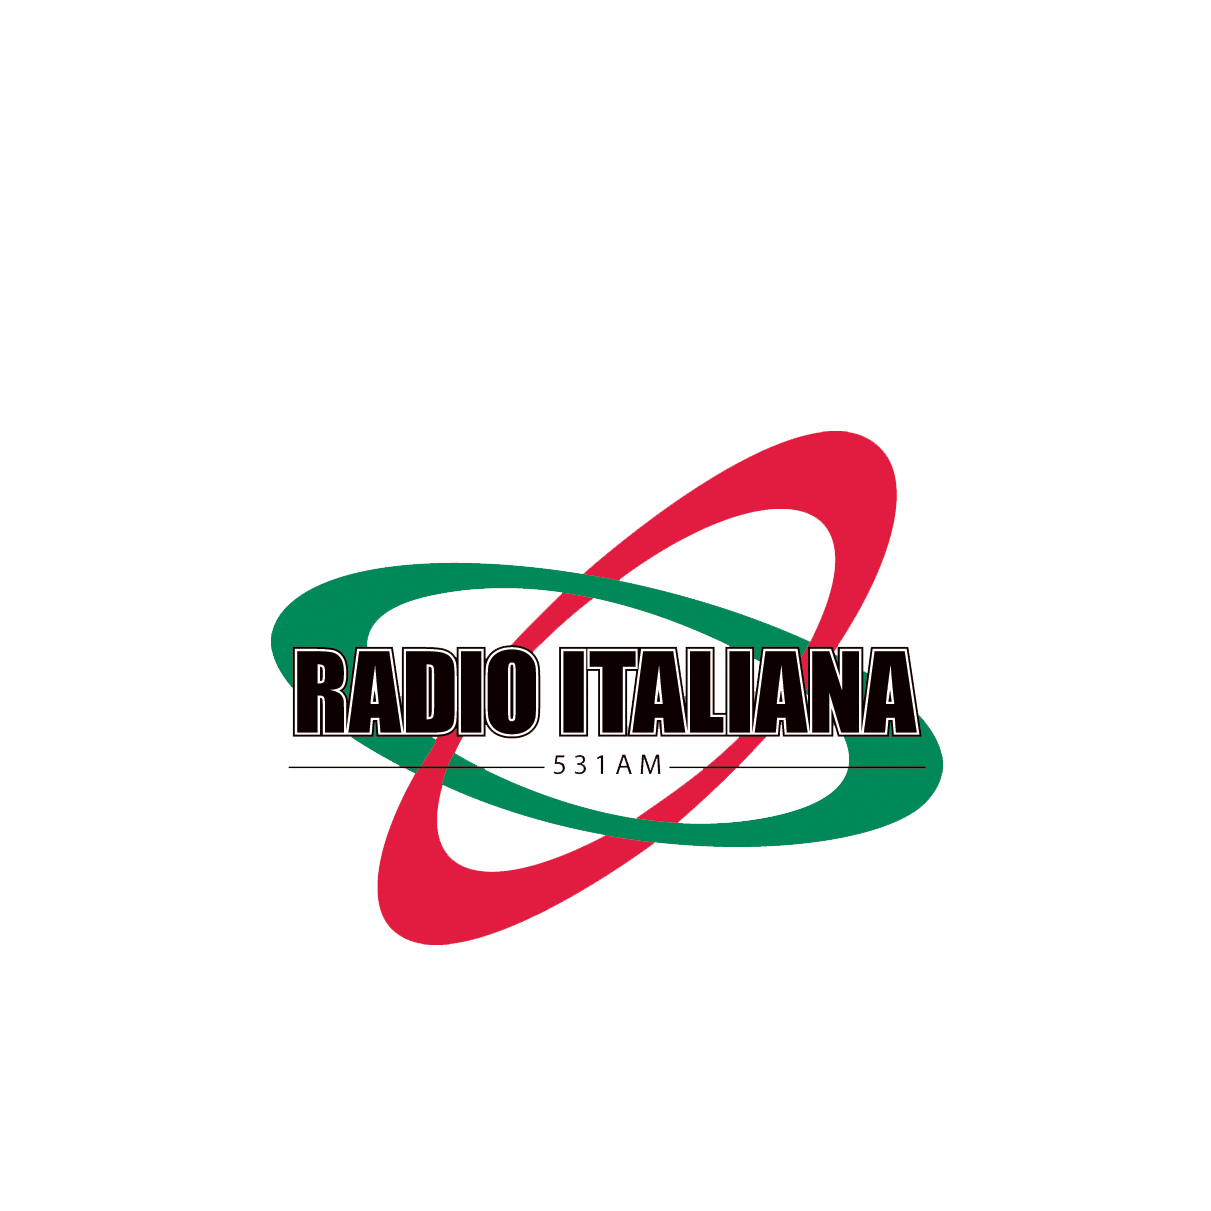 Radio Italiana 531AM